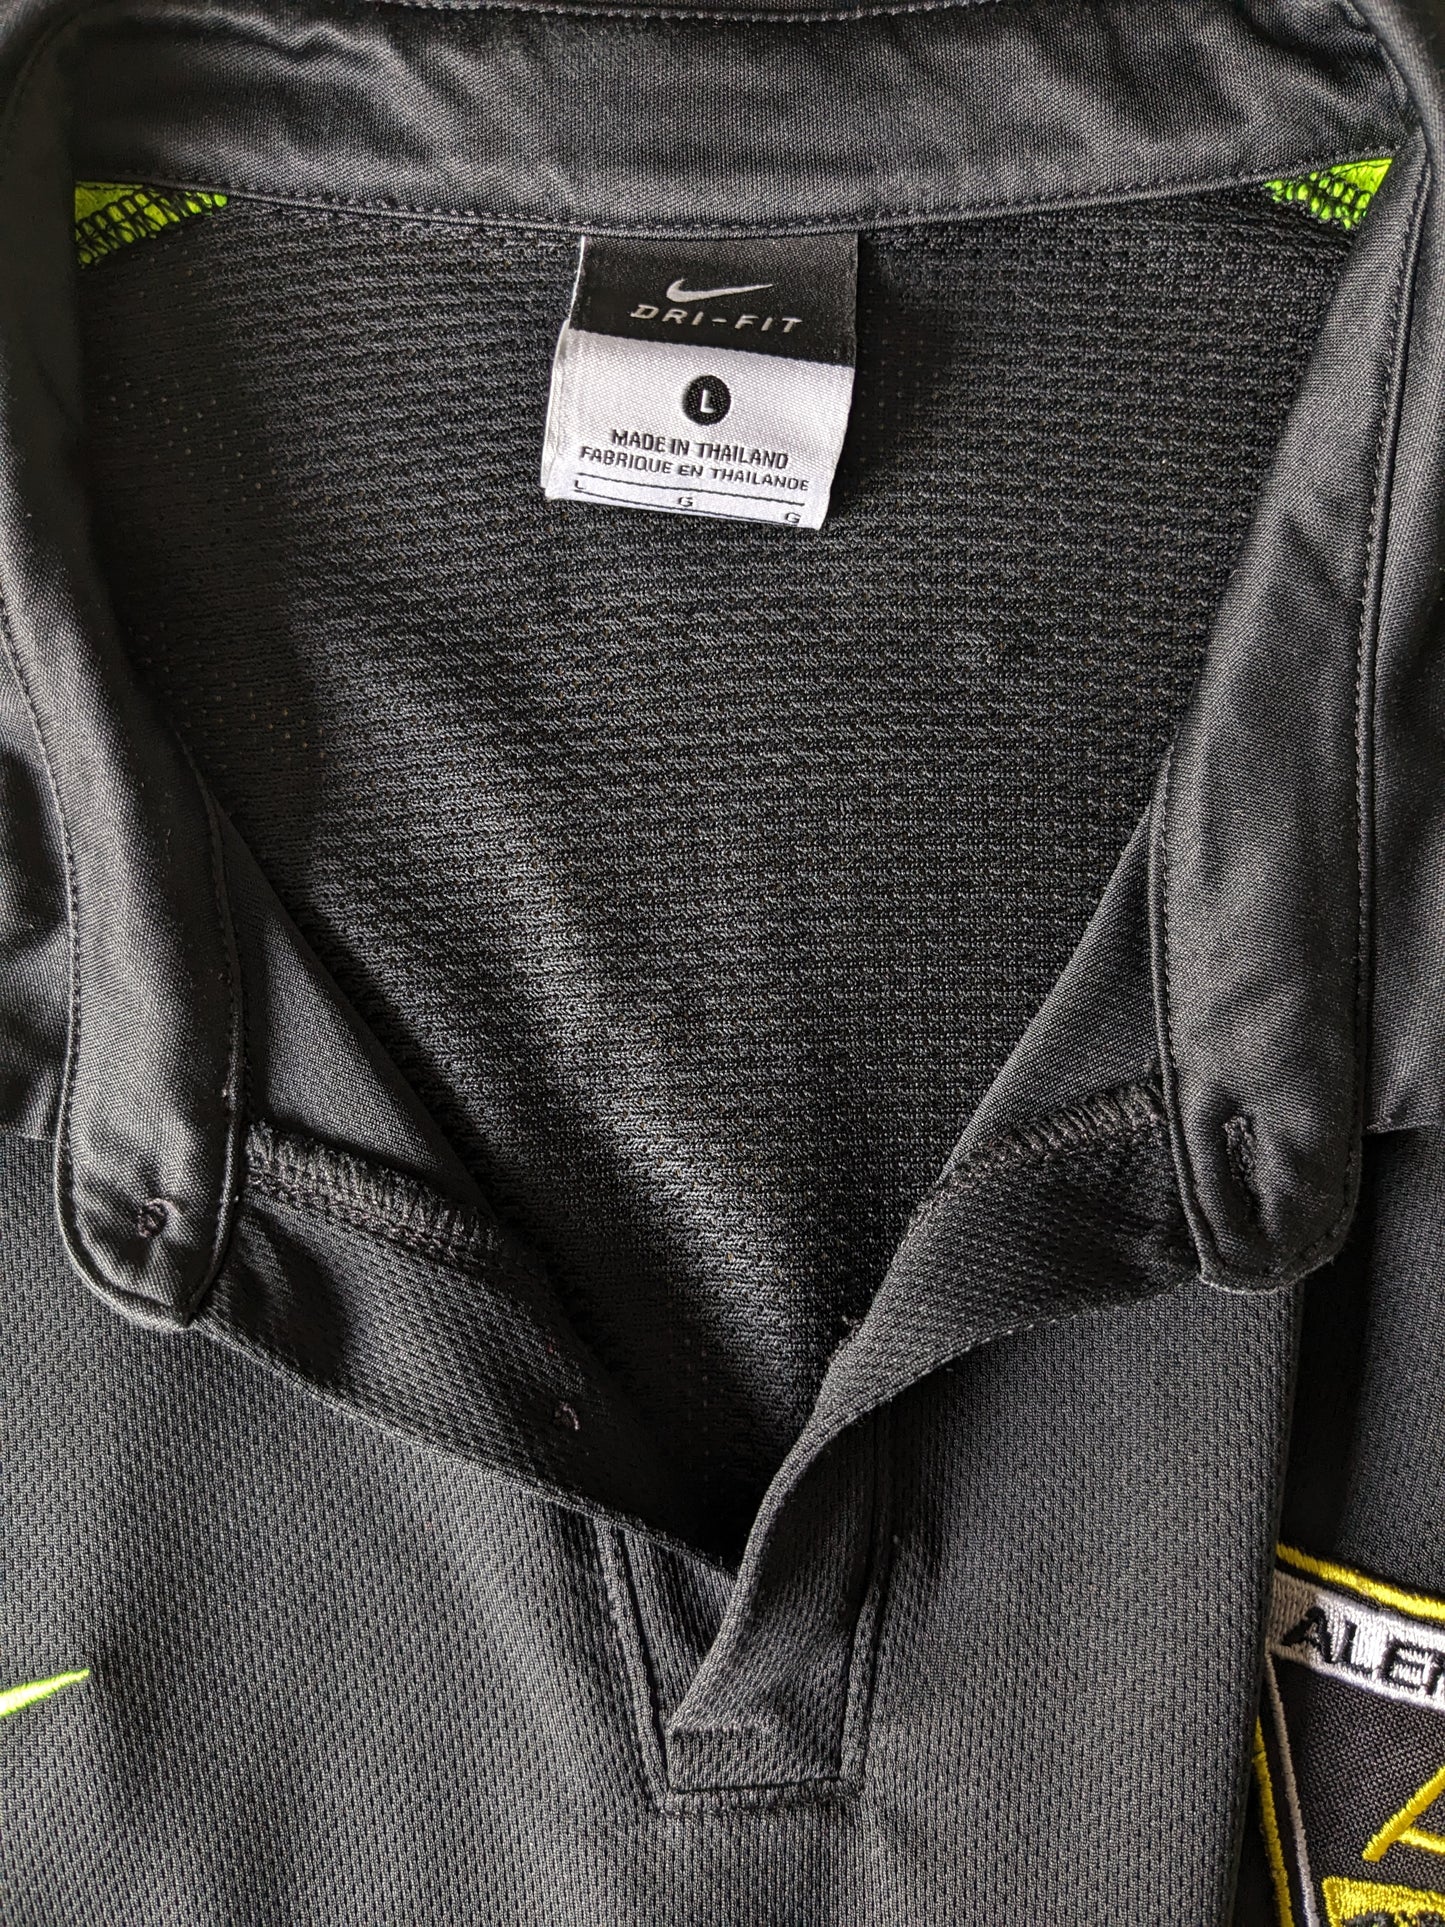 Nike Alemannia Sport Polo. Schwarzgrün gefärbt. Größe L.